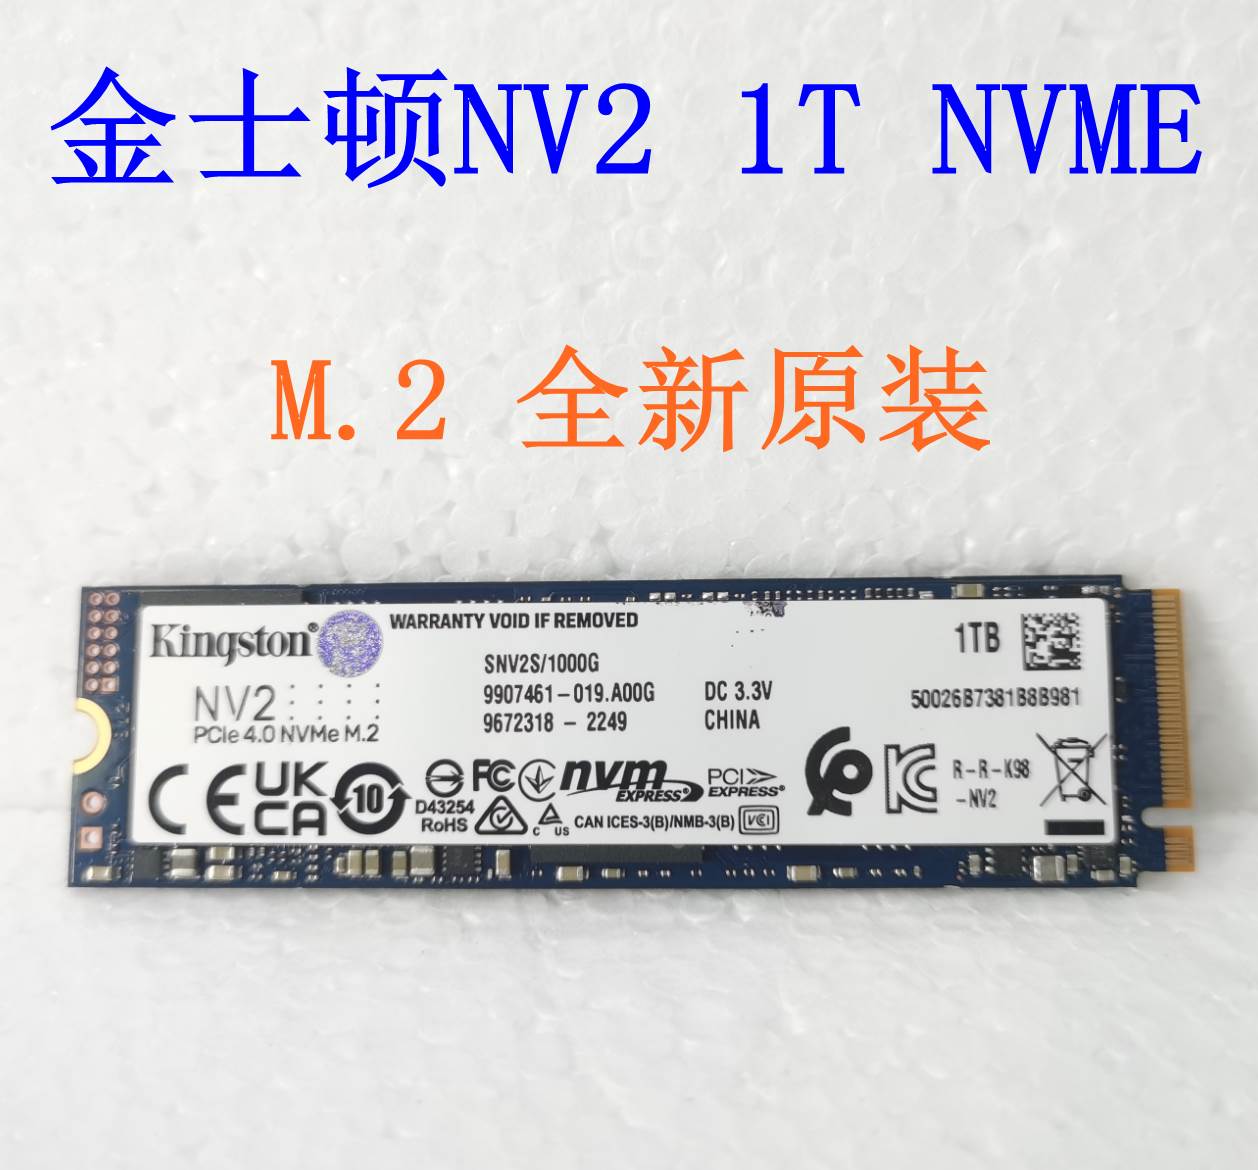 二手 Aigo/爱国者 P2000(1TB) M.2 NVME固态硬盘另有金士顿NV2 1T